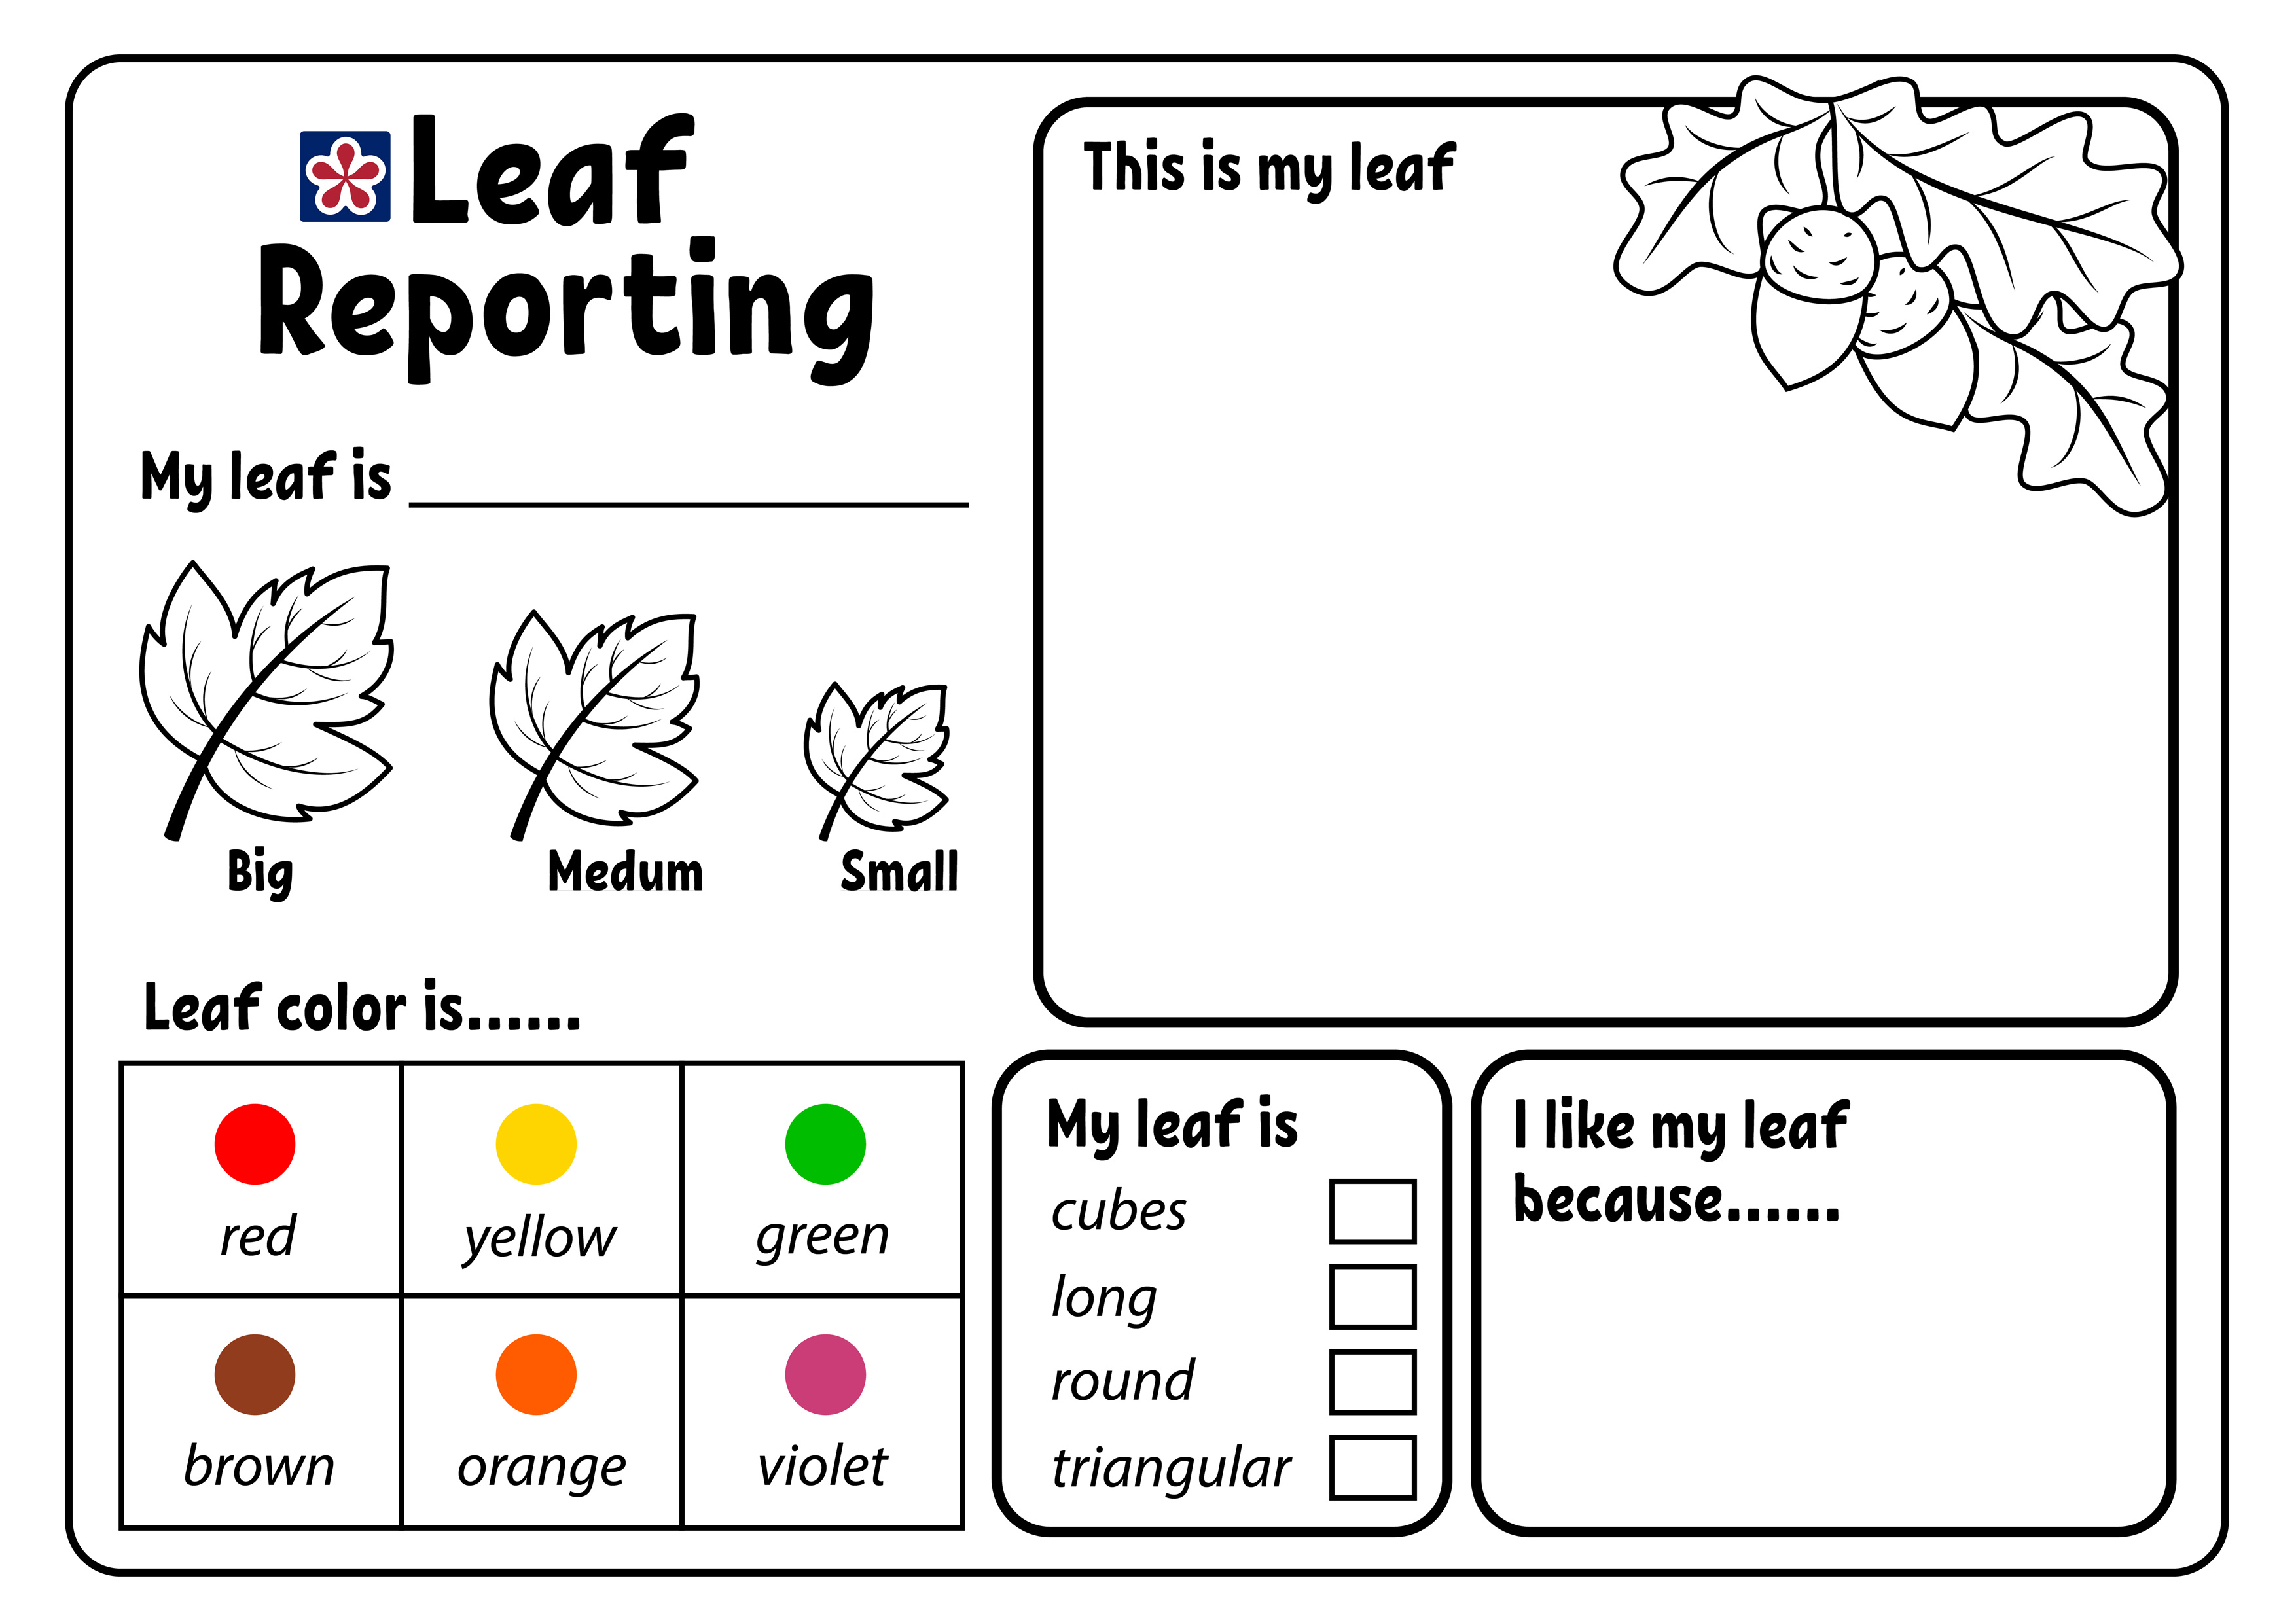 free-printable-leaf-reporting-worksheet-teachersmag